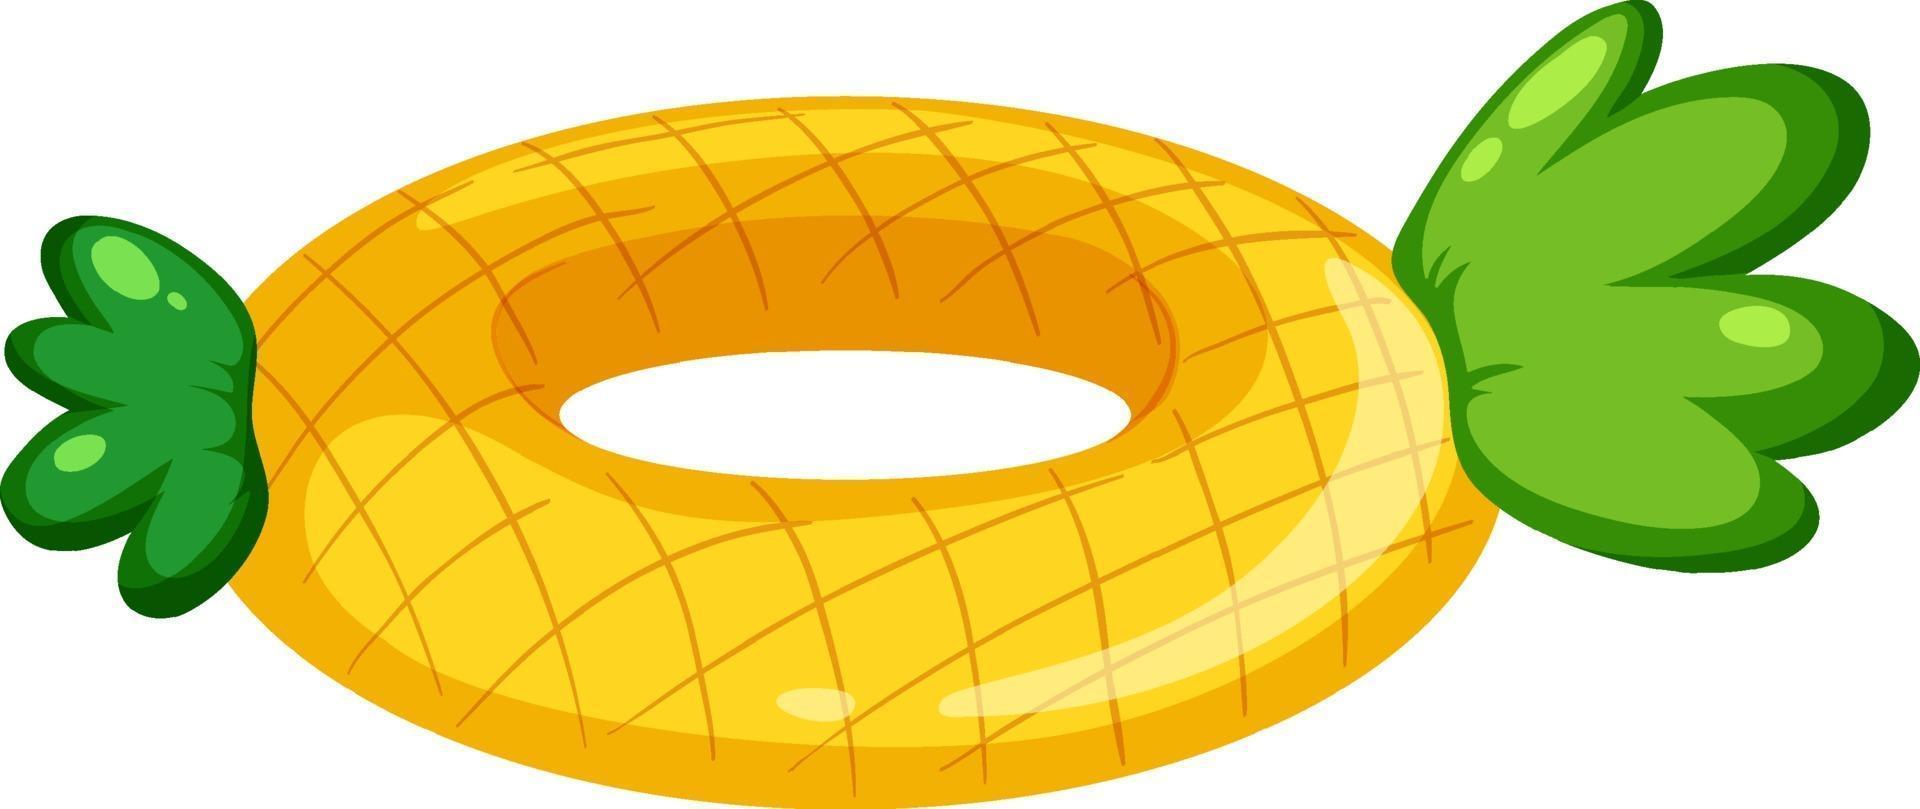 anel de natação com padrão de abacaxi isolado vetor